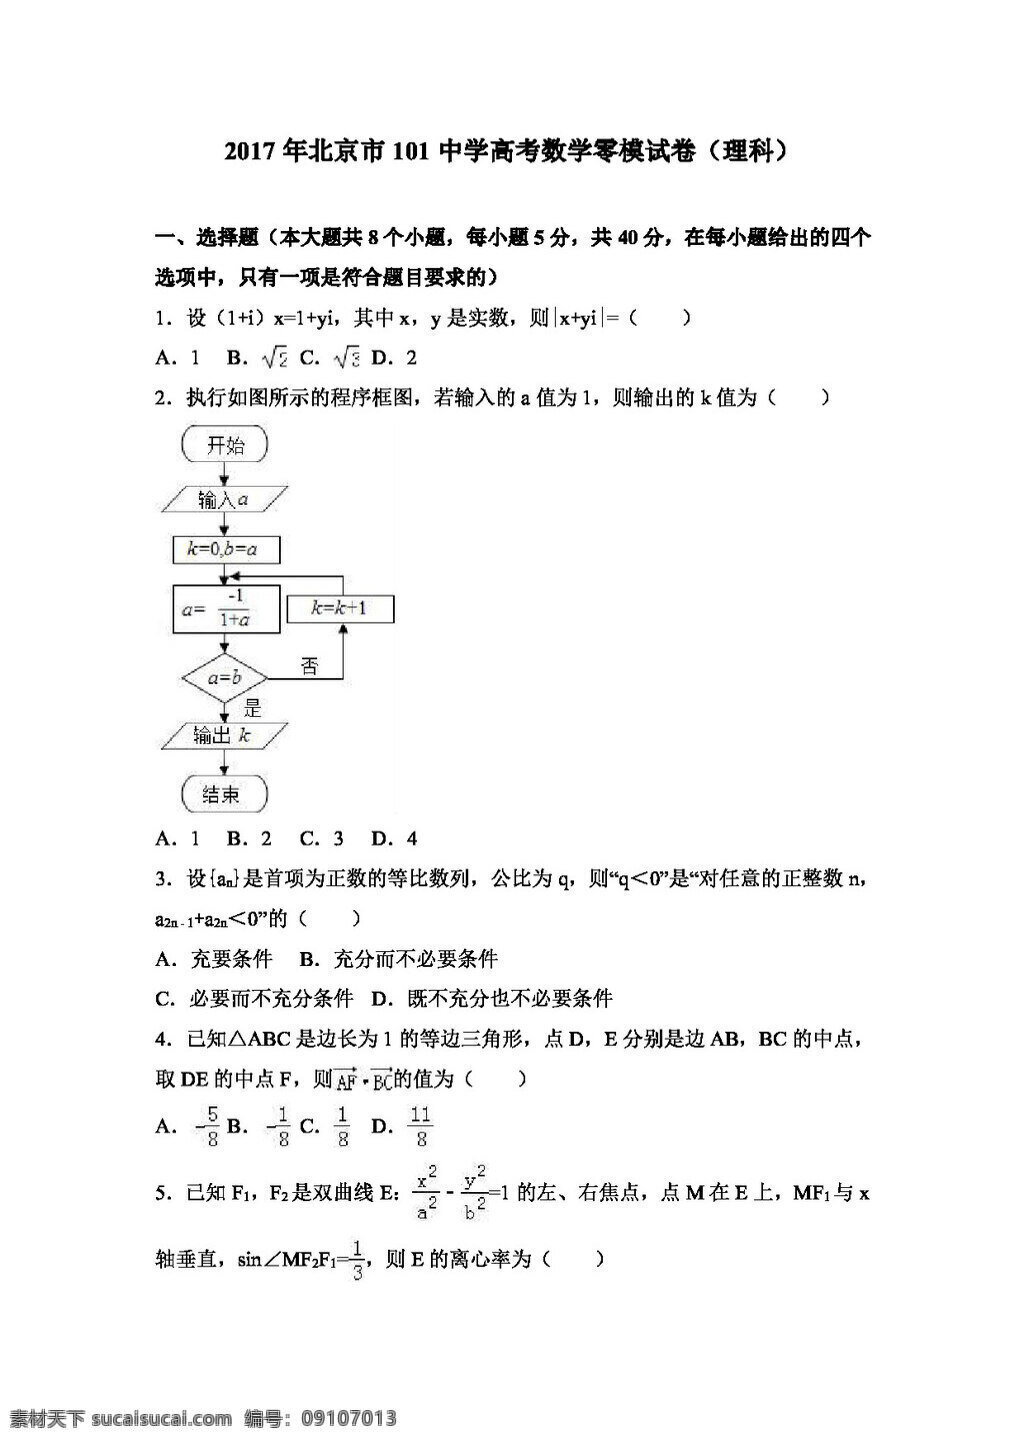 数学 人教 版 2017 年 北京市 中学 高考 零 模 试卷 理科 高考专区 人教版